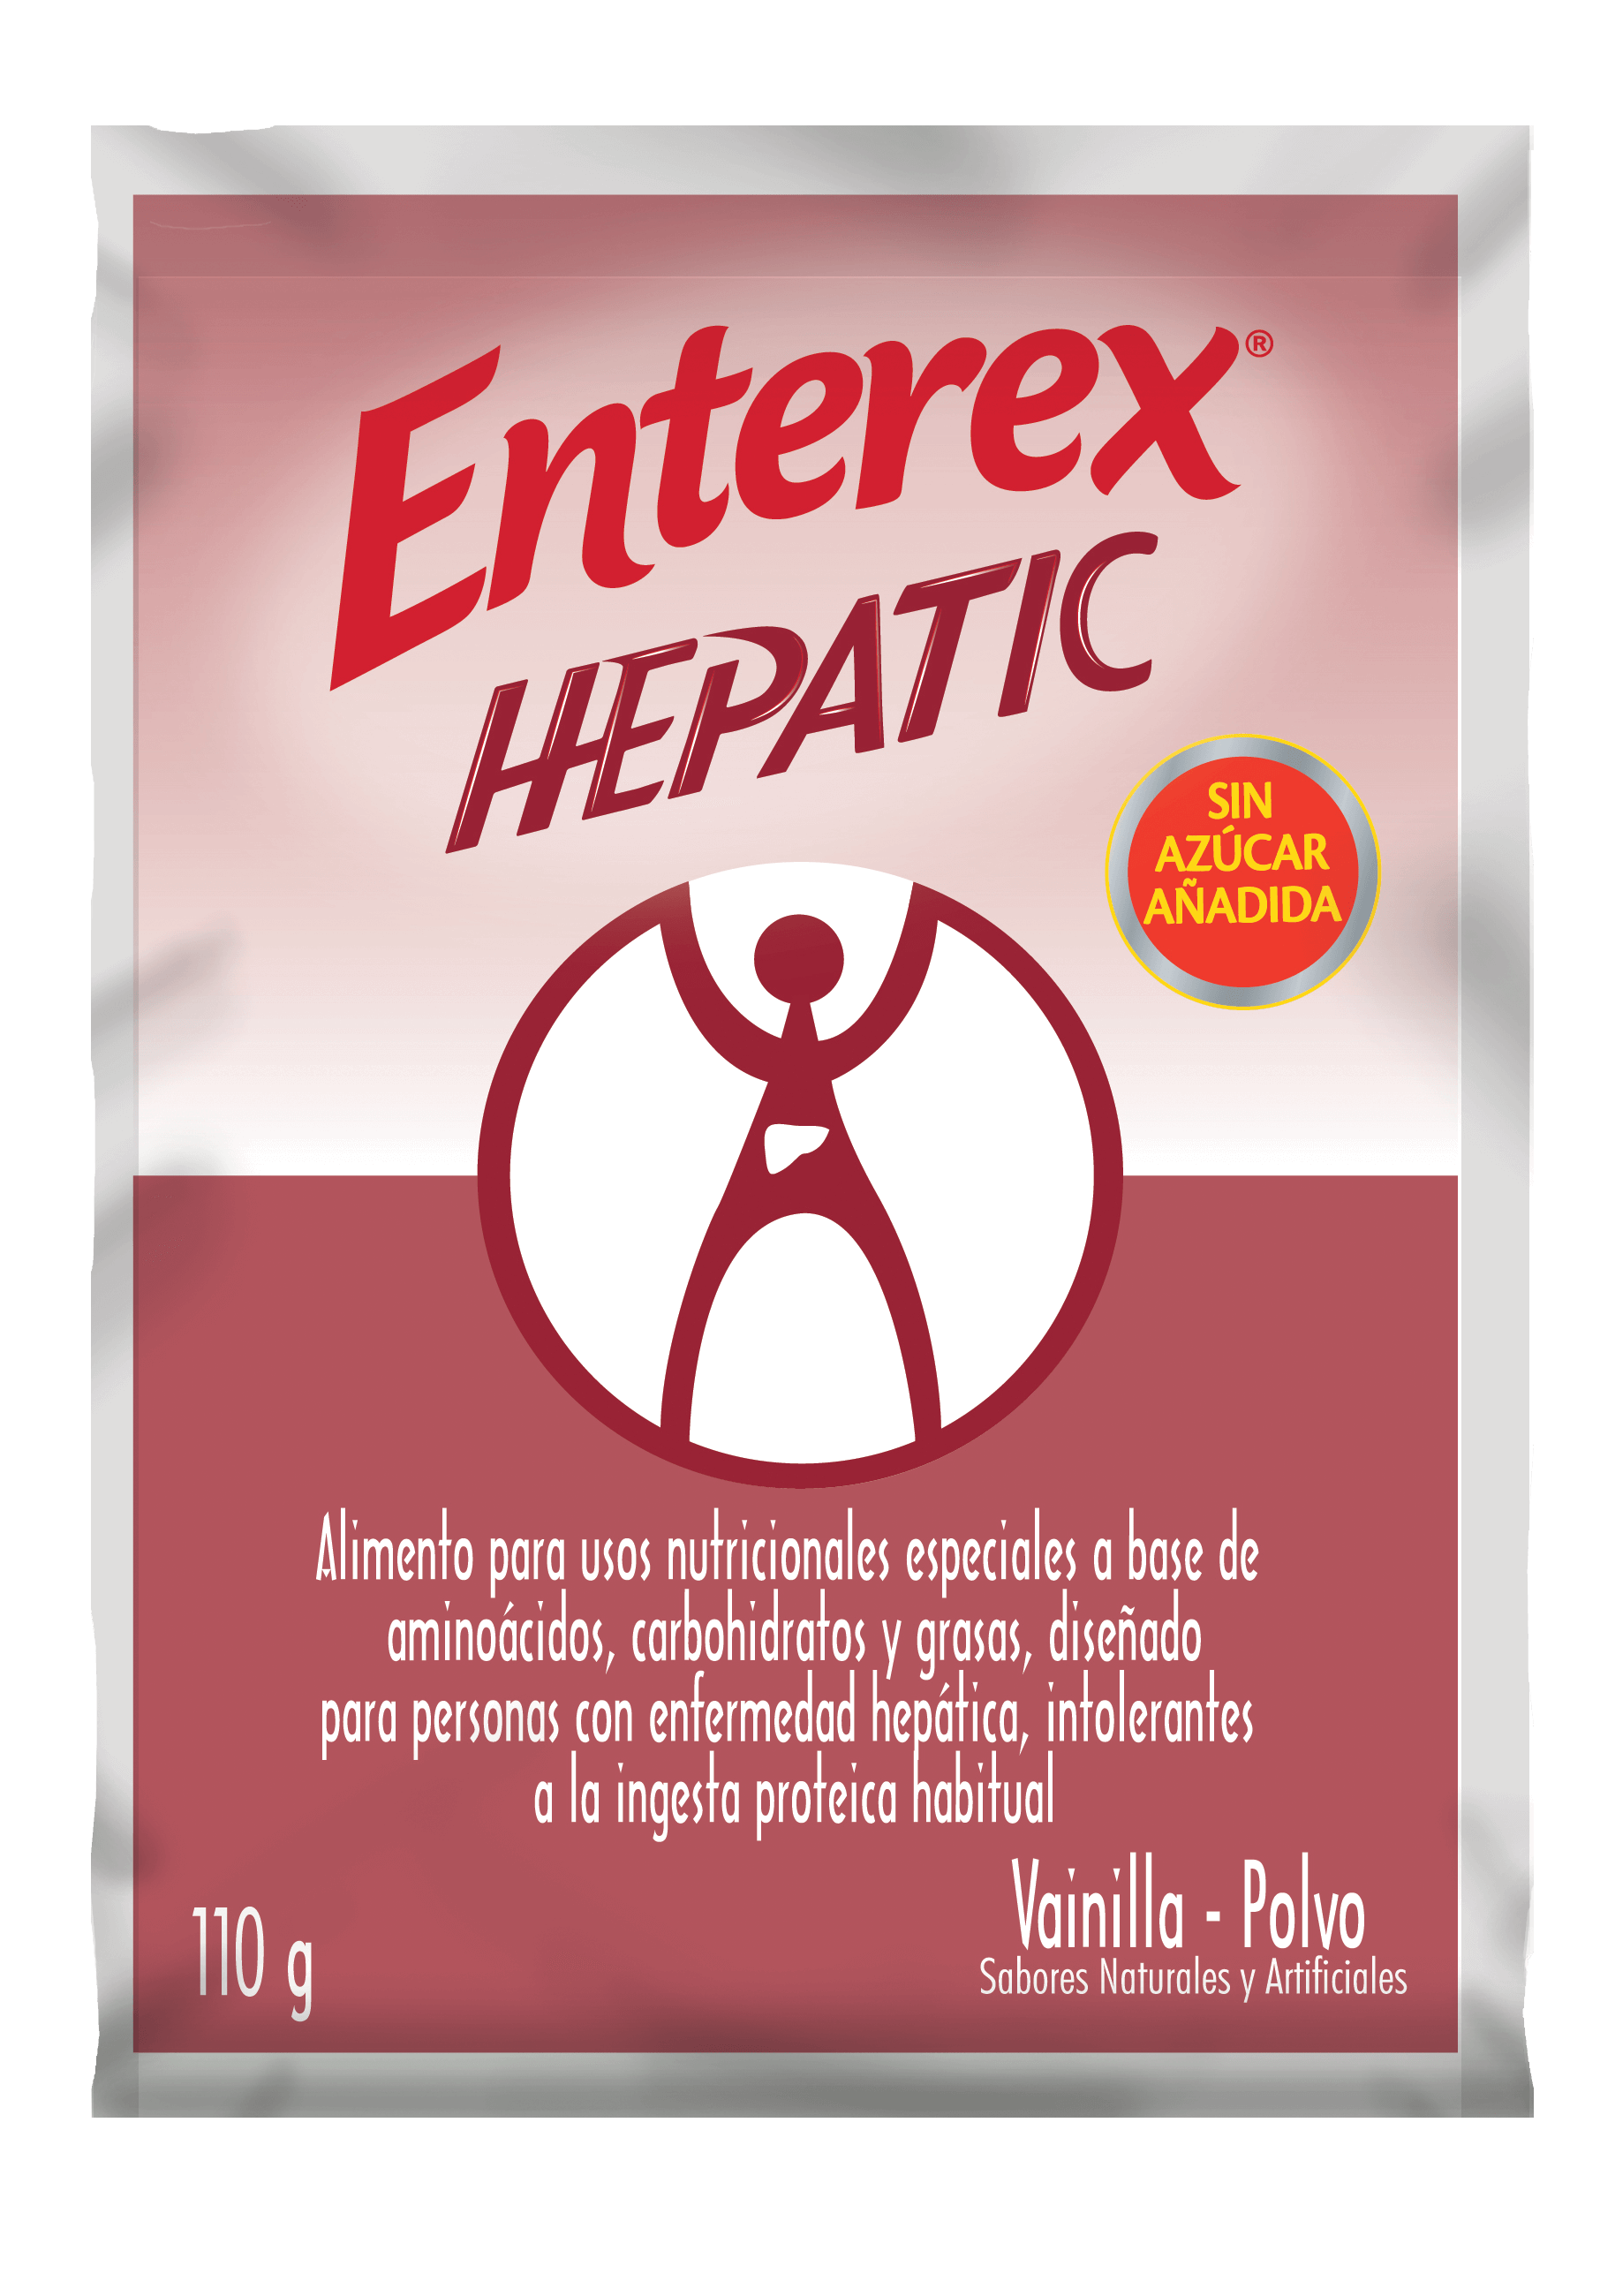 Enterex Hepatic